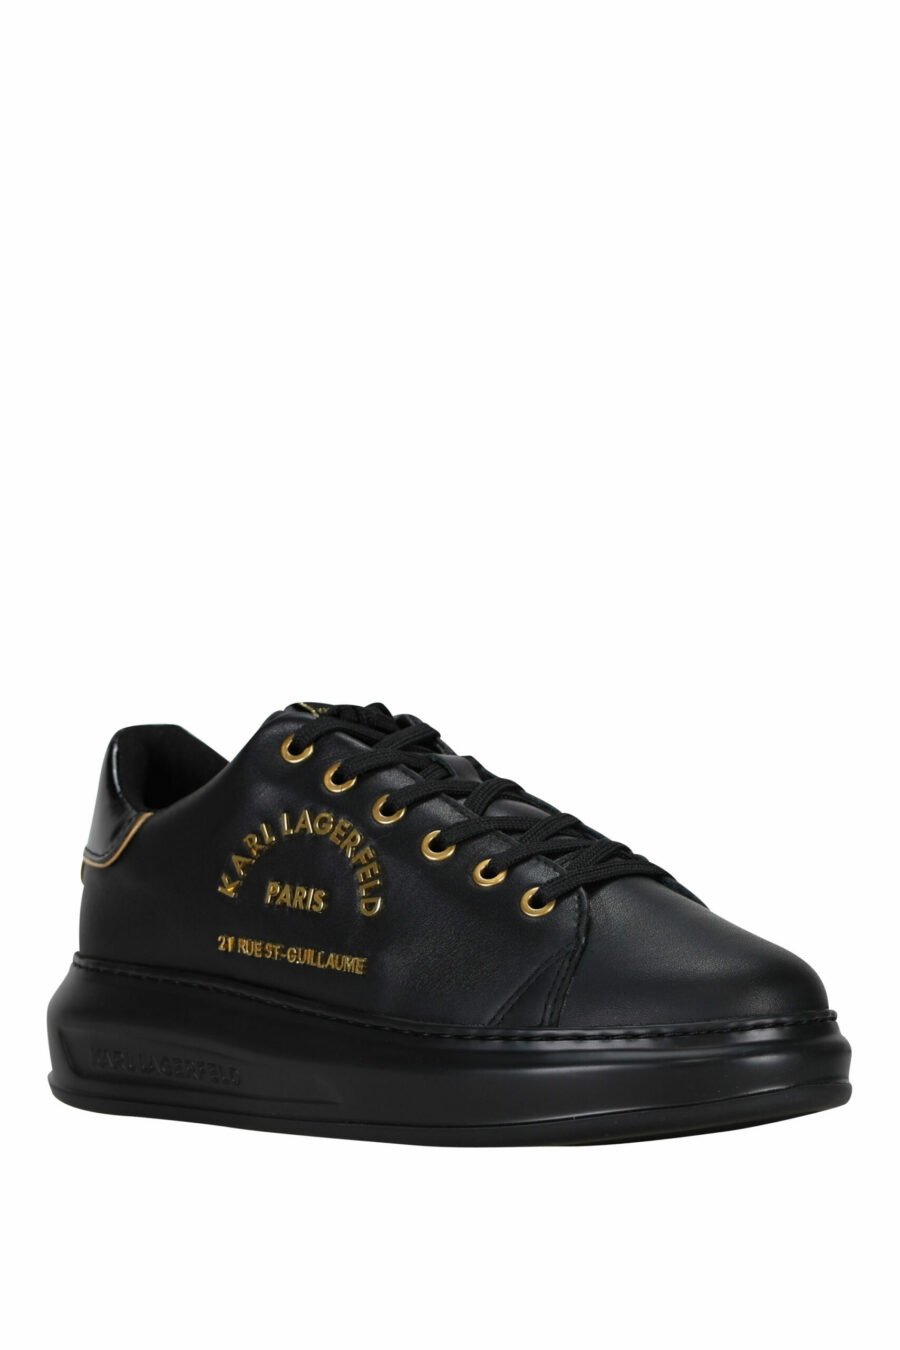 Zapatillas negras con logo "rue st guillaume" dorado en metal - 5059529362699 1 scaled